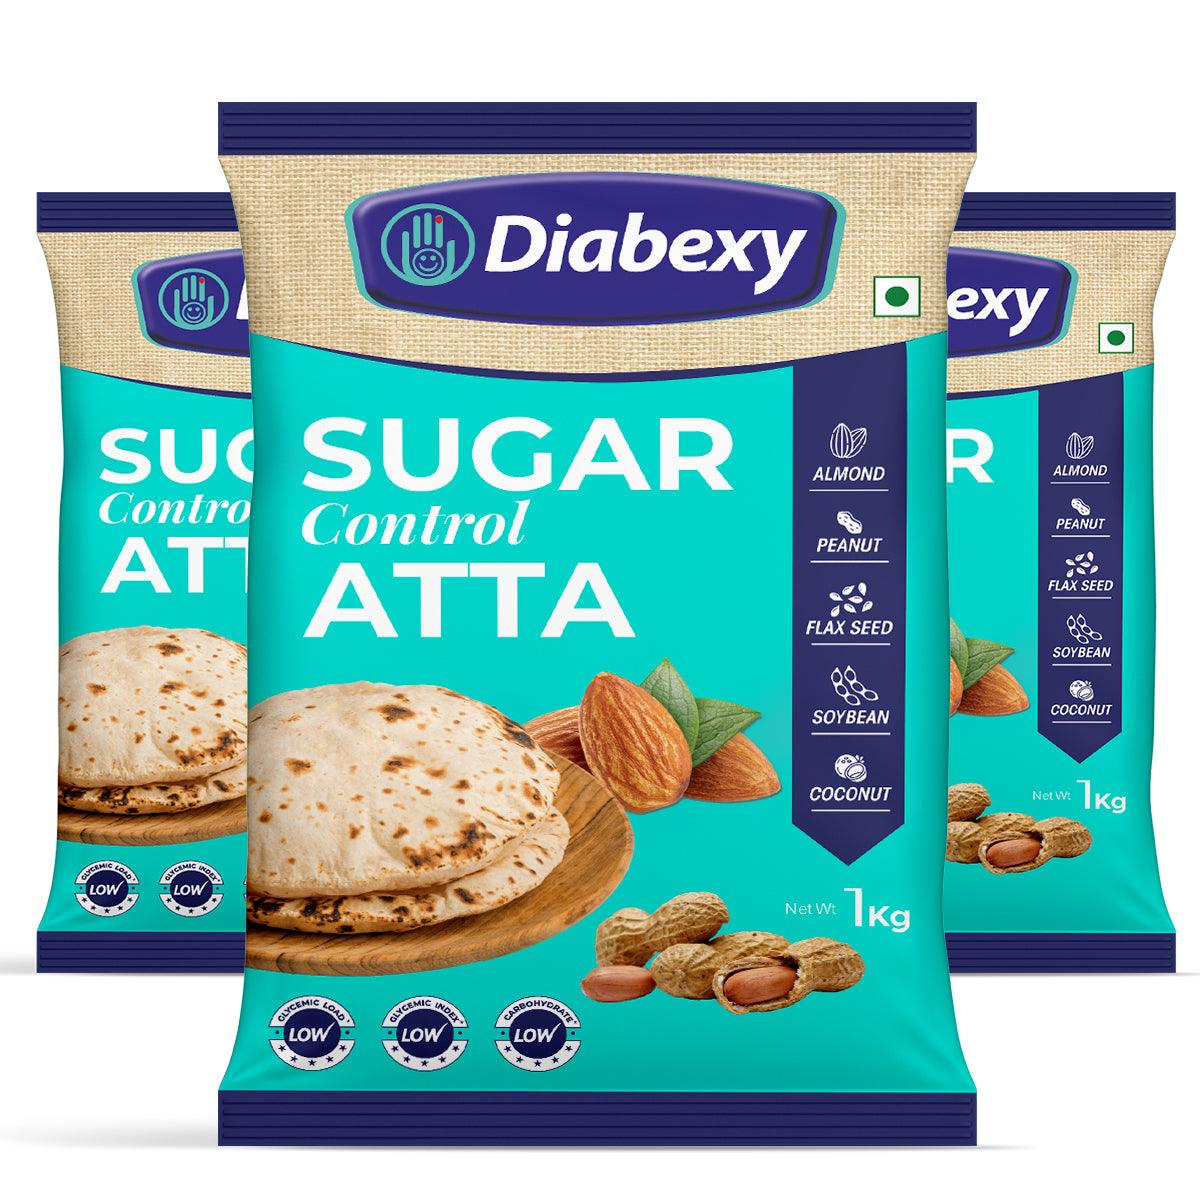 Diabexy Sugar Control Atta - 1kg (Pack of 3) - Diabexy